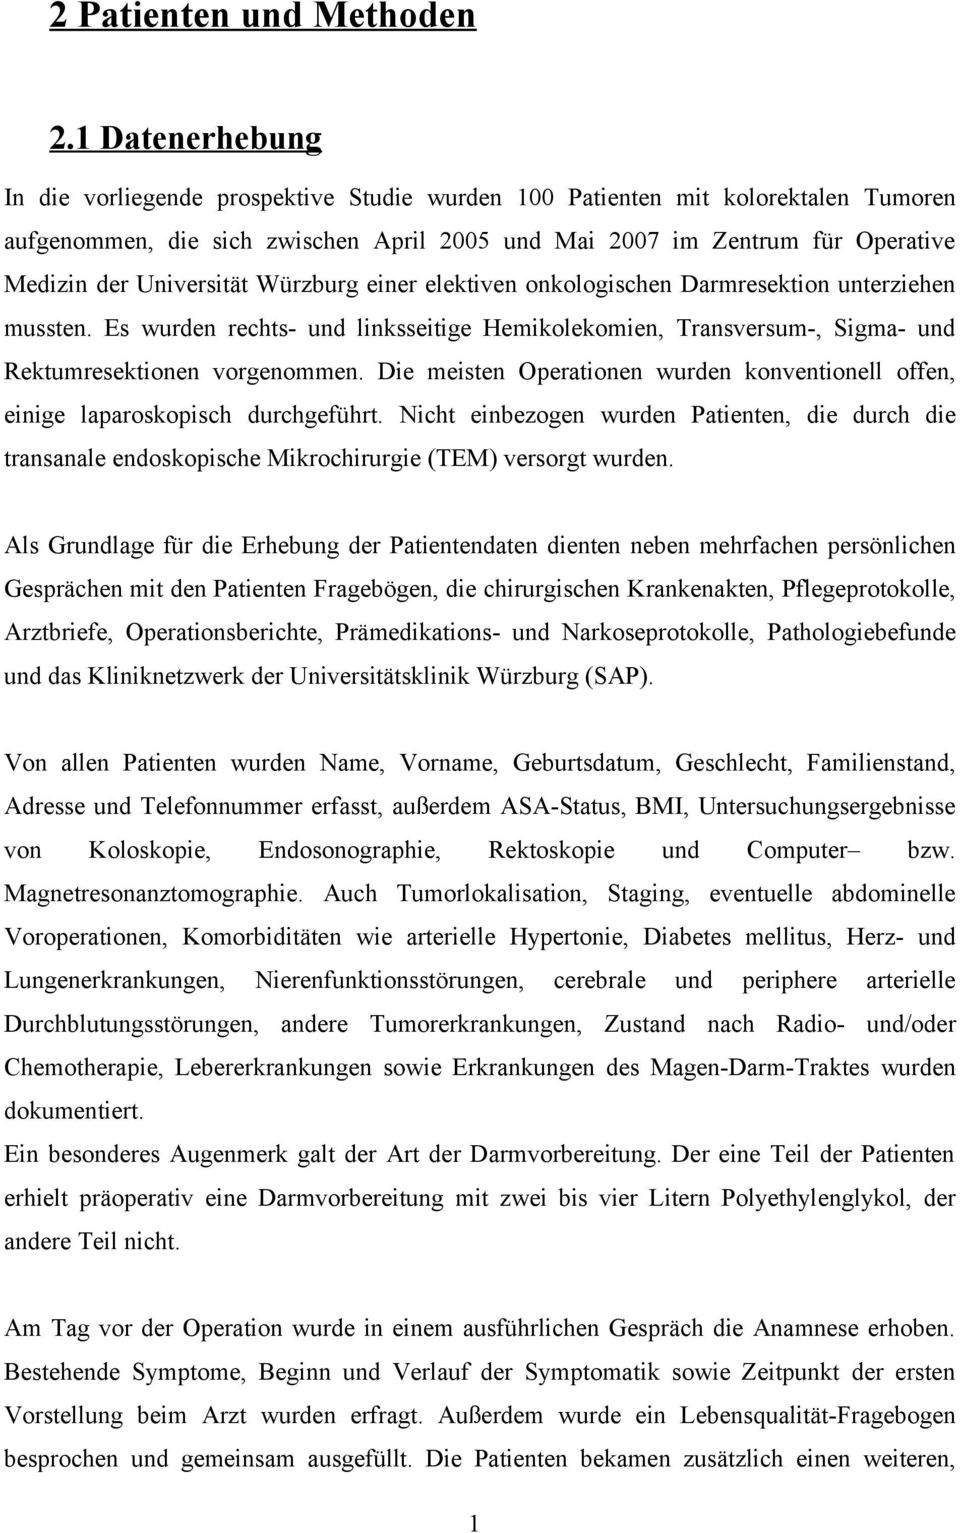 Universität Würzburg einer elektiven onkologischen Darmresektion unterziehen mussten. Es wurden rechts- und linksseitige Hemikolekomien, Transversum-, Sigma- und Rektumresektionen vorgenommen.